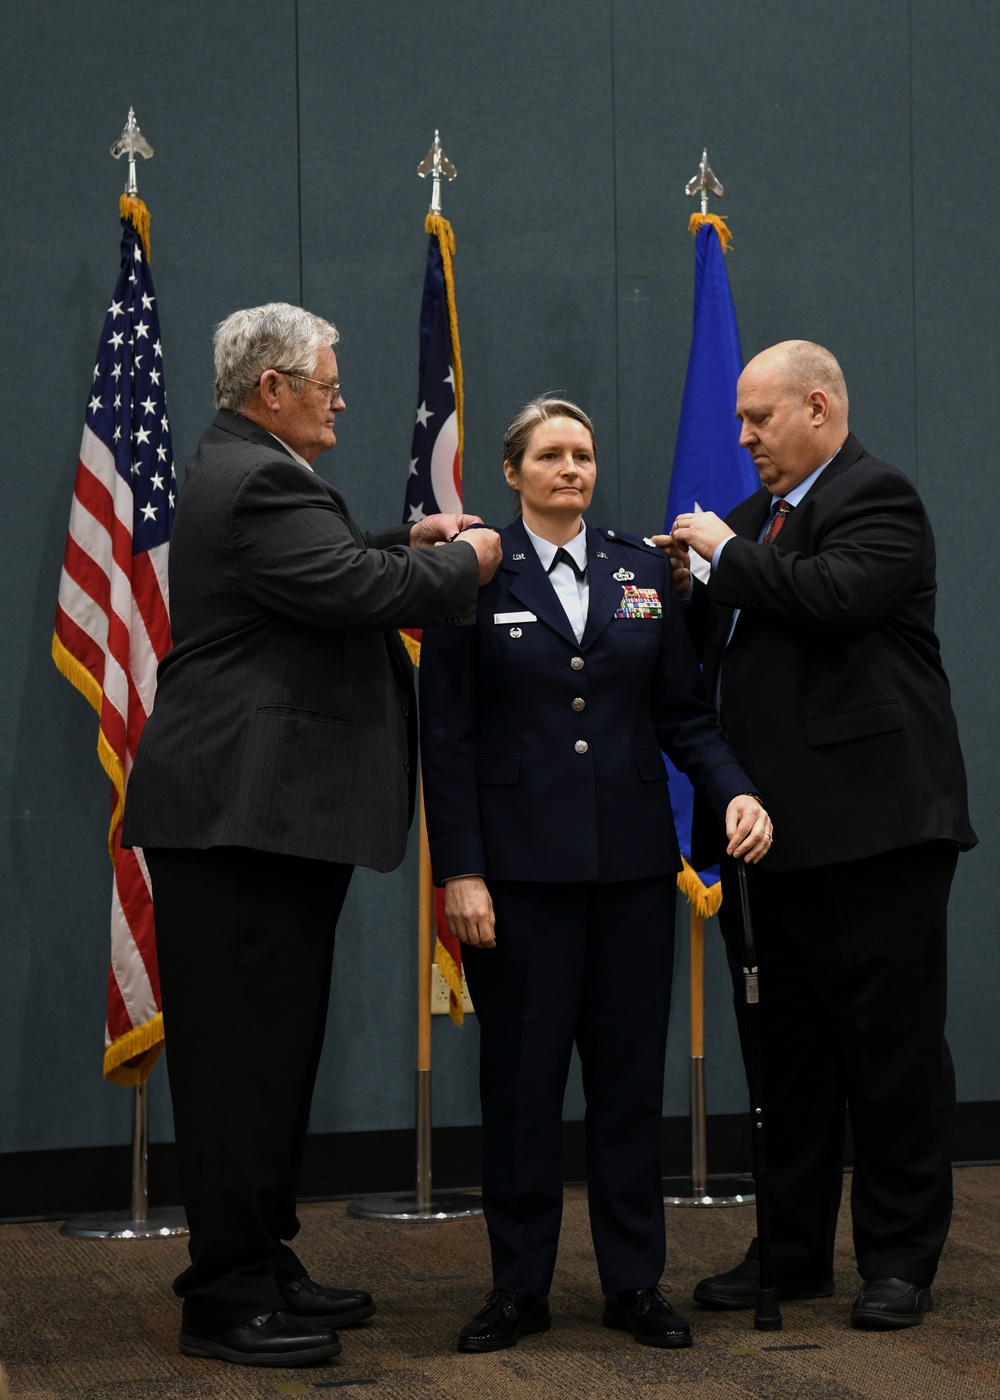 Col. Ellen Noble receives promotion